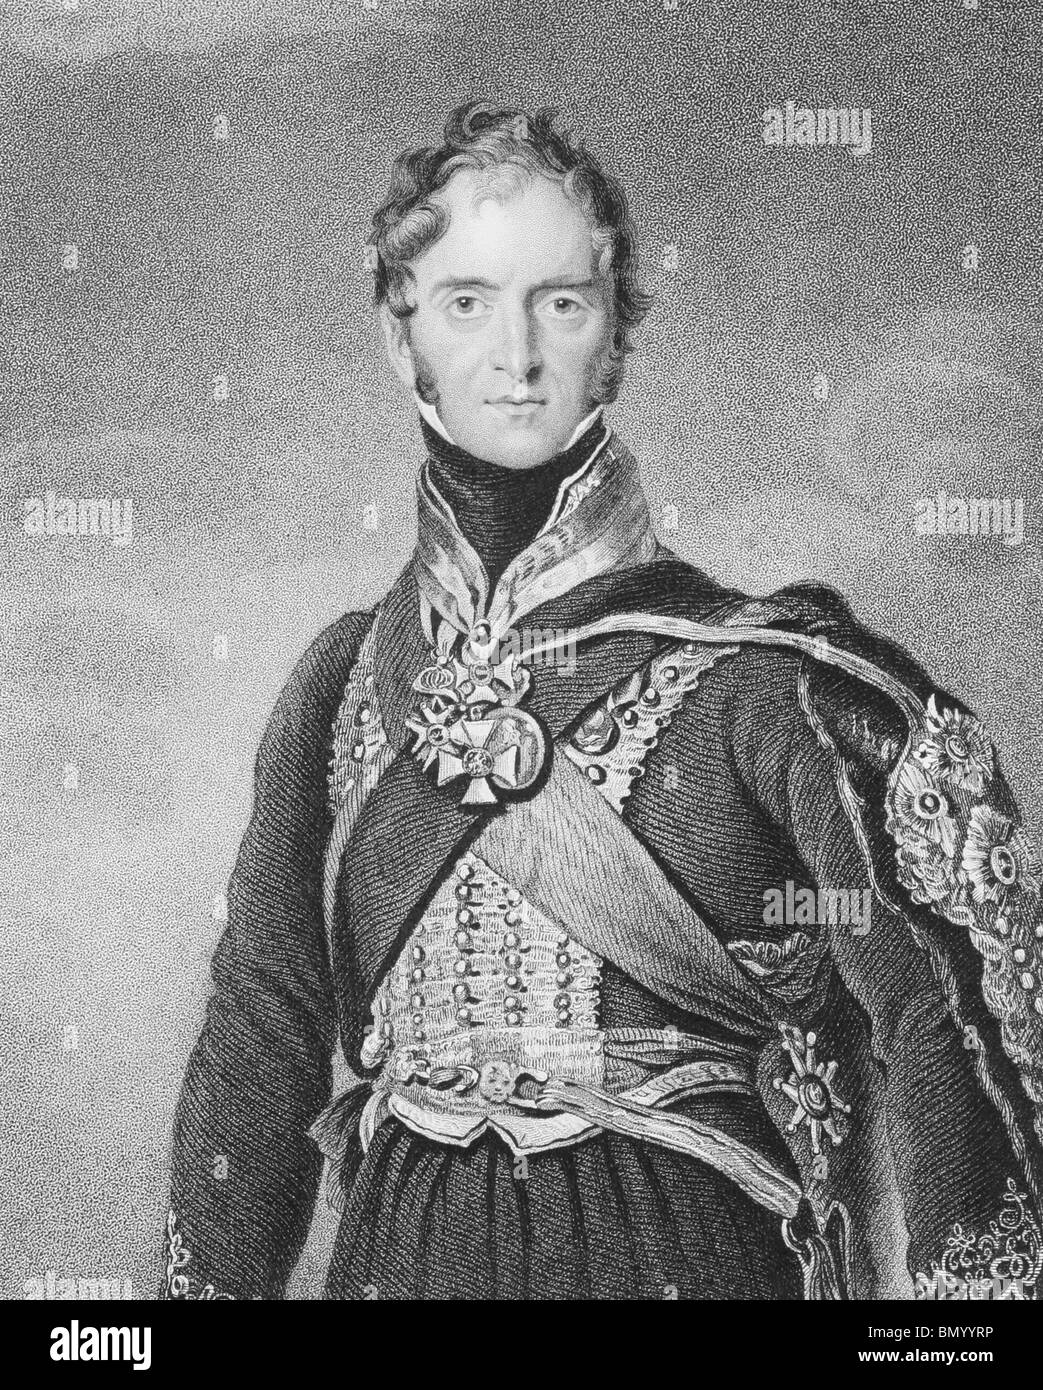 Henry Paget, 1. Marquess of Anglesey (1768-1854) auf Gravur aus den 1800er Jahren. Britische militärische Führer und Politiker. Stockfoto